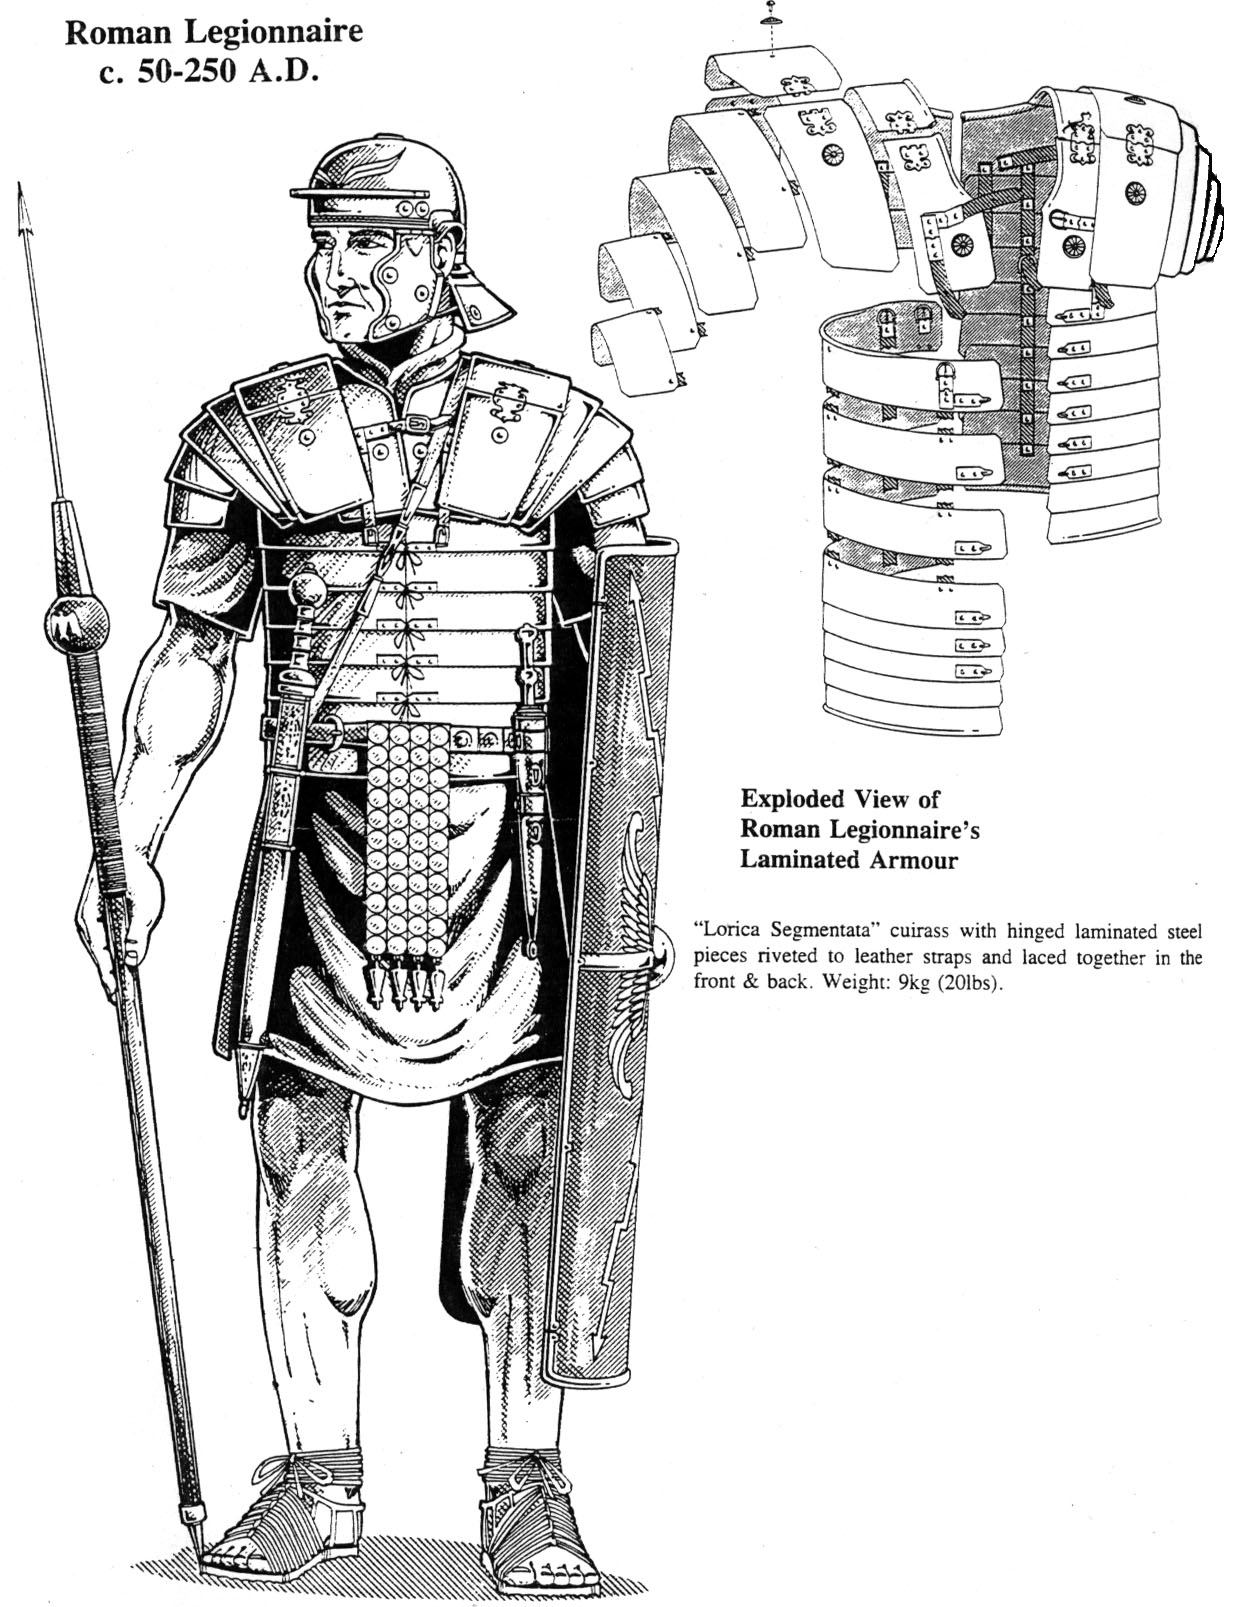 革の話をしてみよう：革の鎧の歴史や作り方をダラダラっと紹介: レザー 